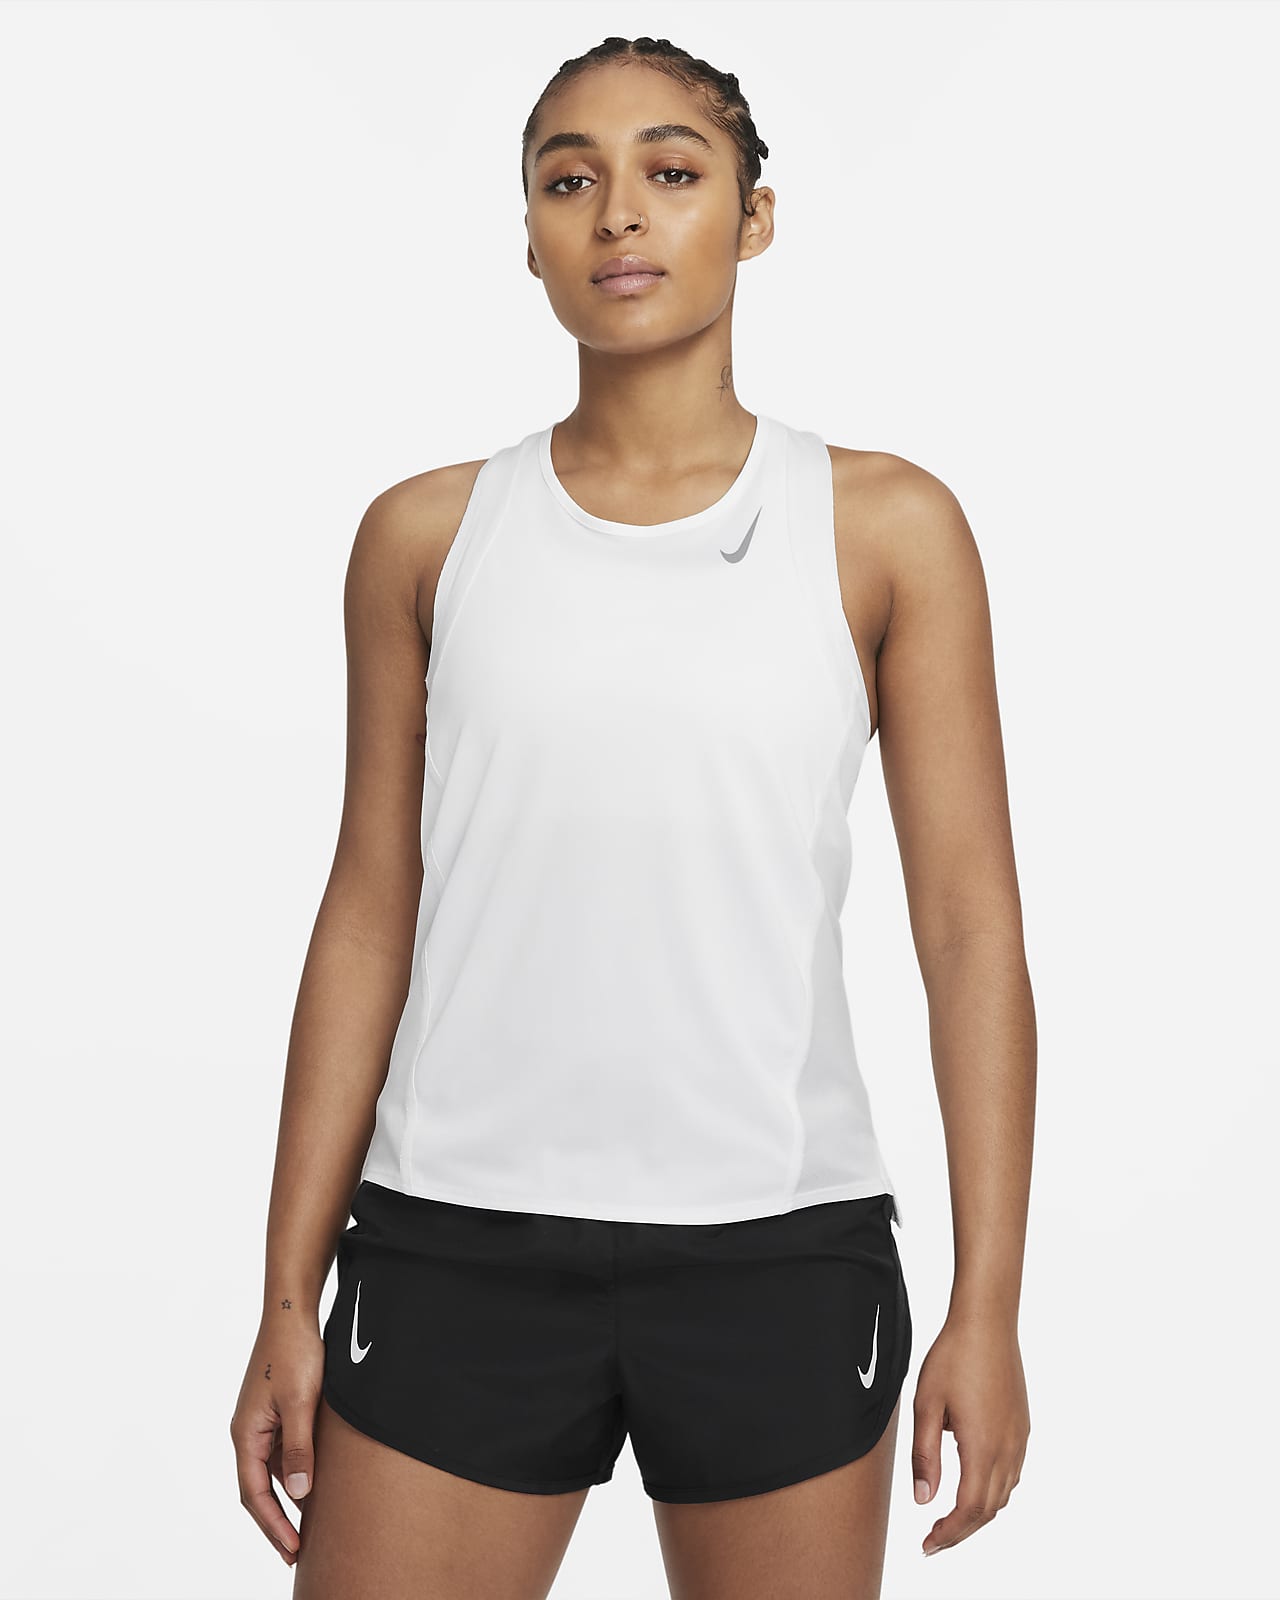 Nike Dri-FIT Race Women's Running Vest